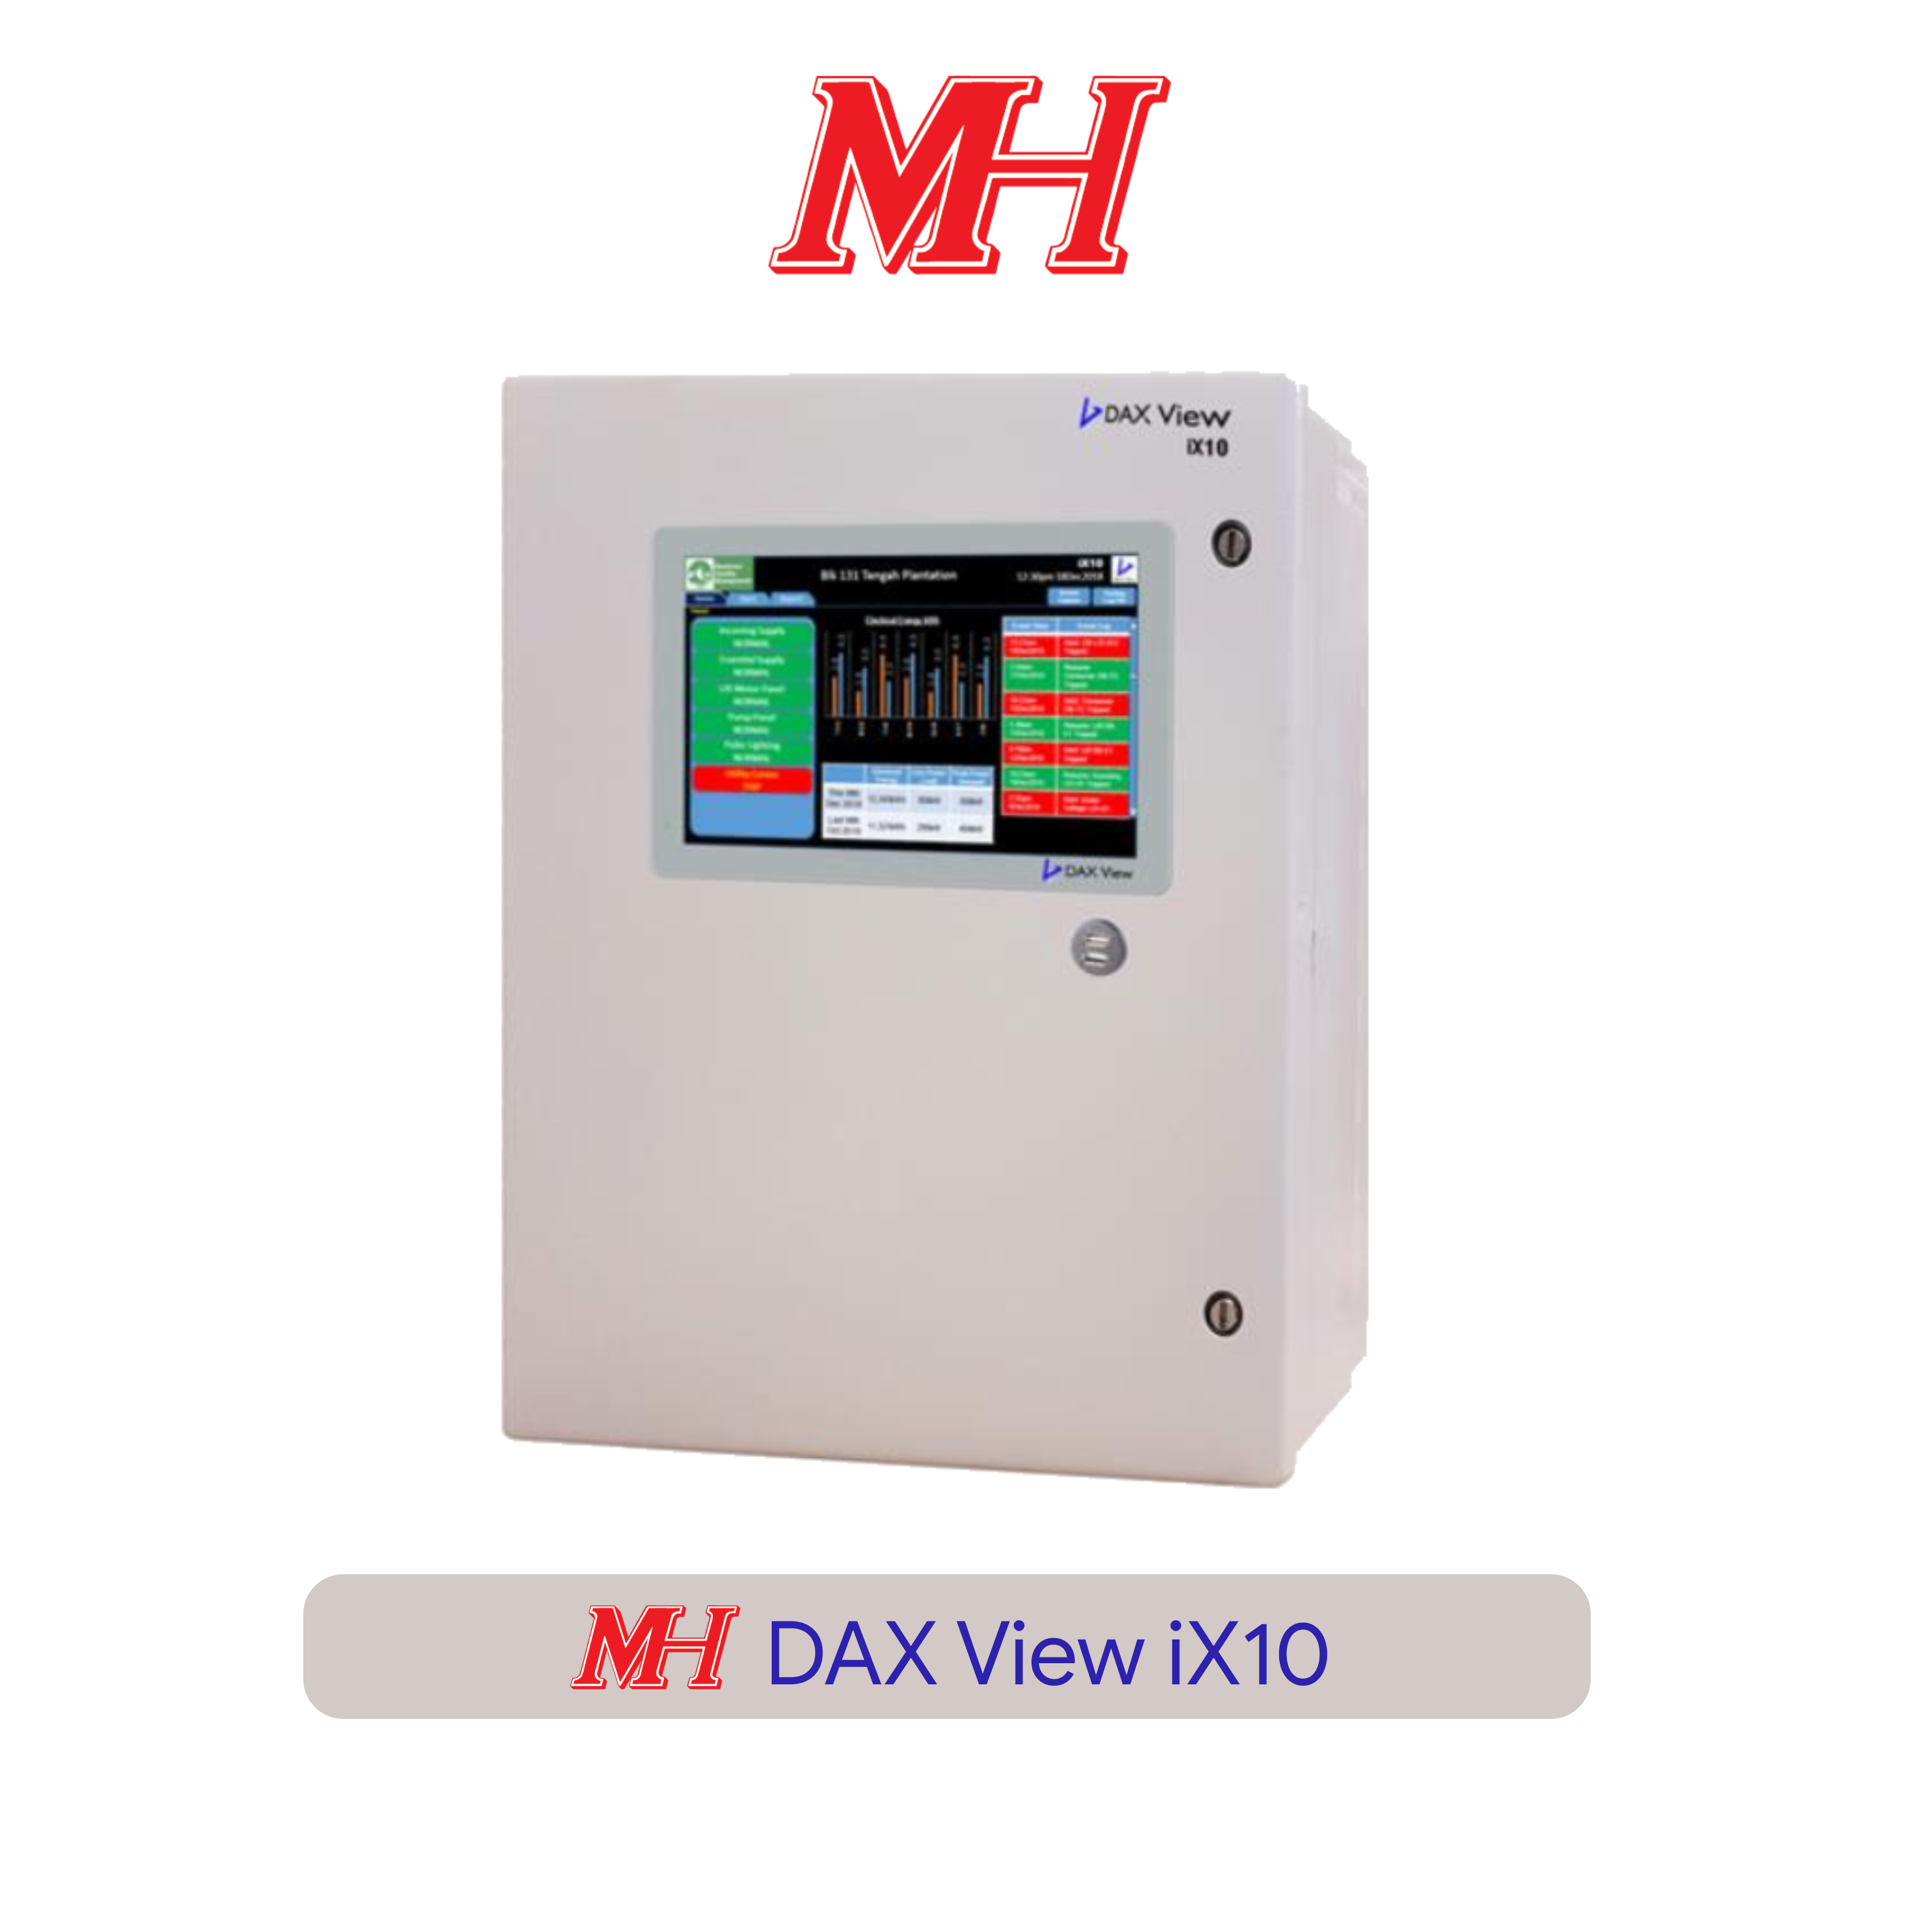 Giải pháp DAX View iX10